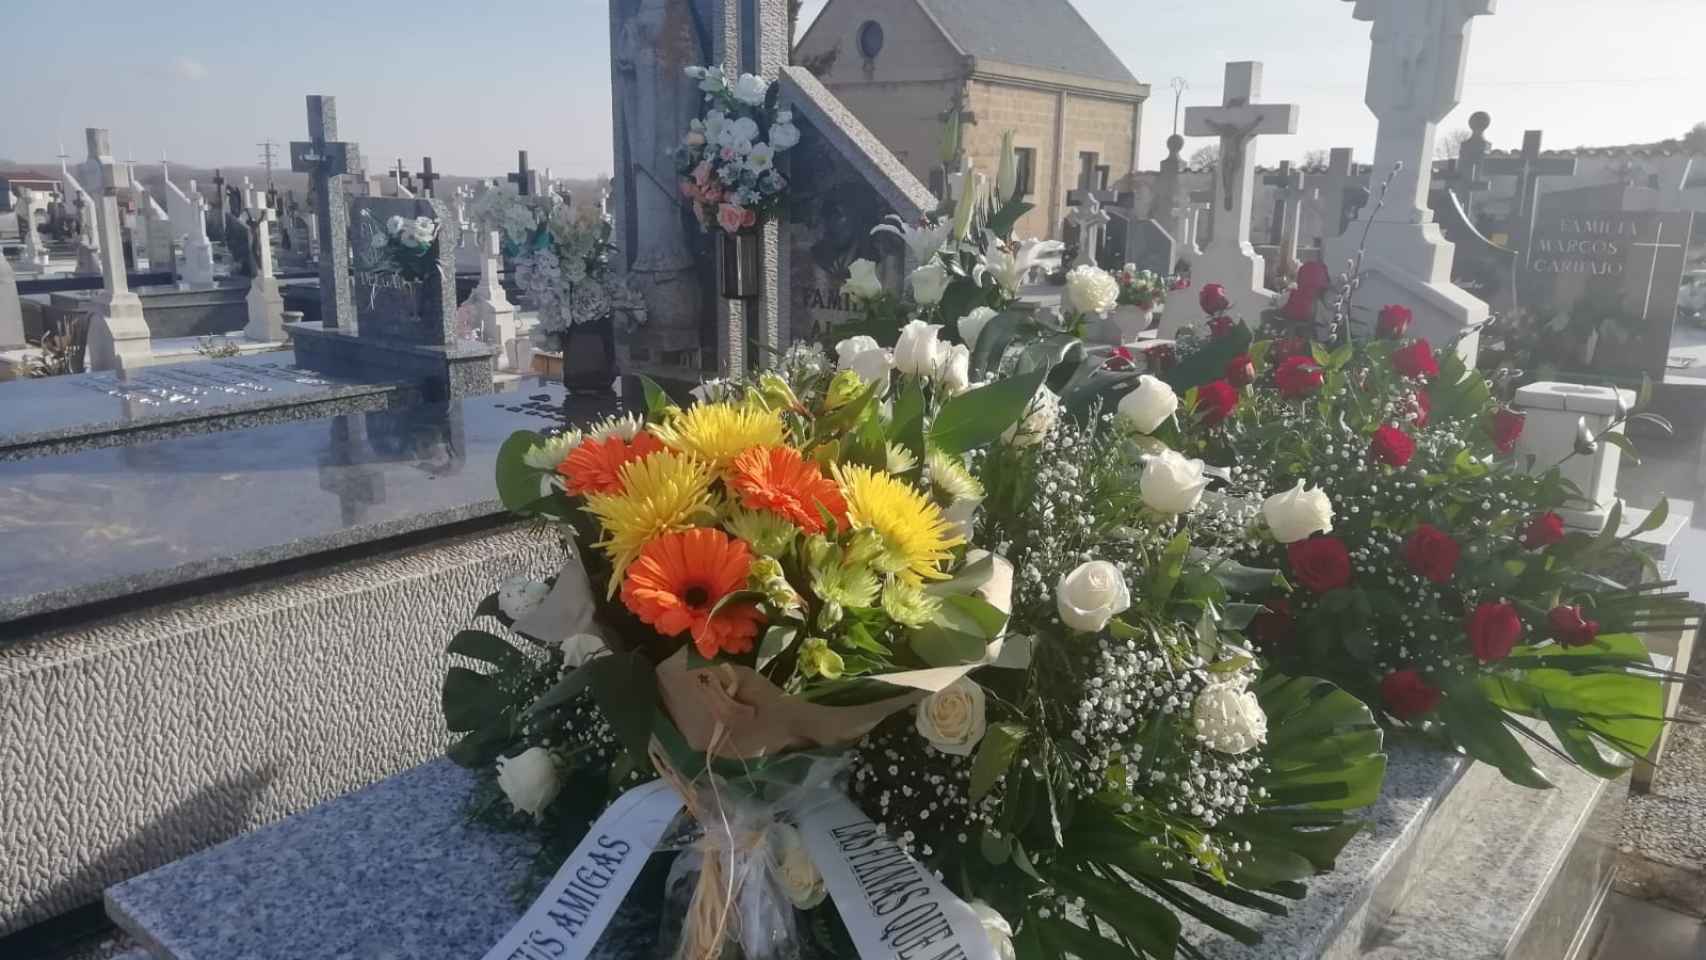 Coronas de flores sobre la tumba familiar de los Fernandez Calvo, donde ha sido enterrada María Jesús.